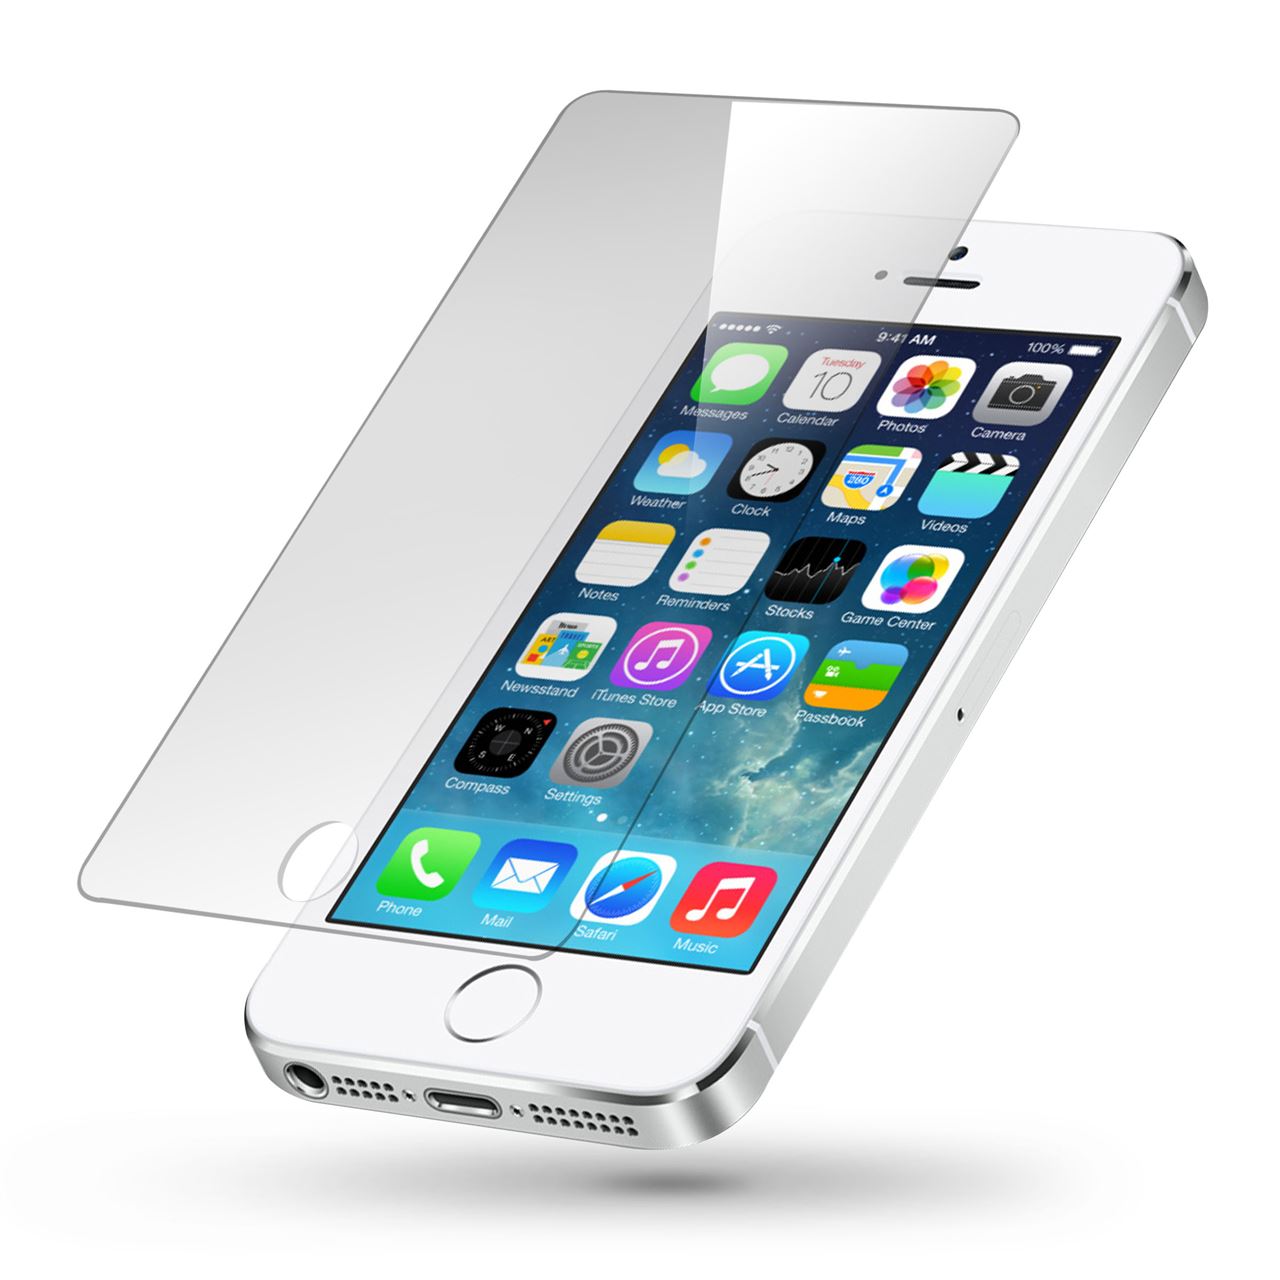 ontwerp Redelijk Calligrapher Iphone 5 Glass Screen Protector - Best Electronic Products Natcom Online  Store